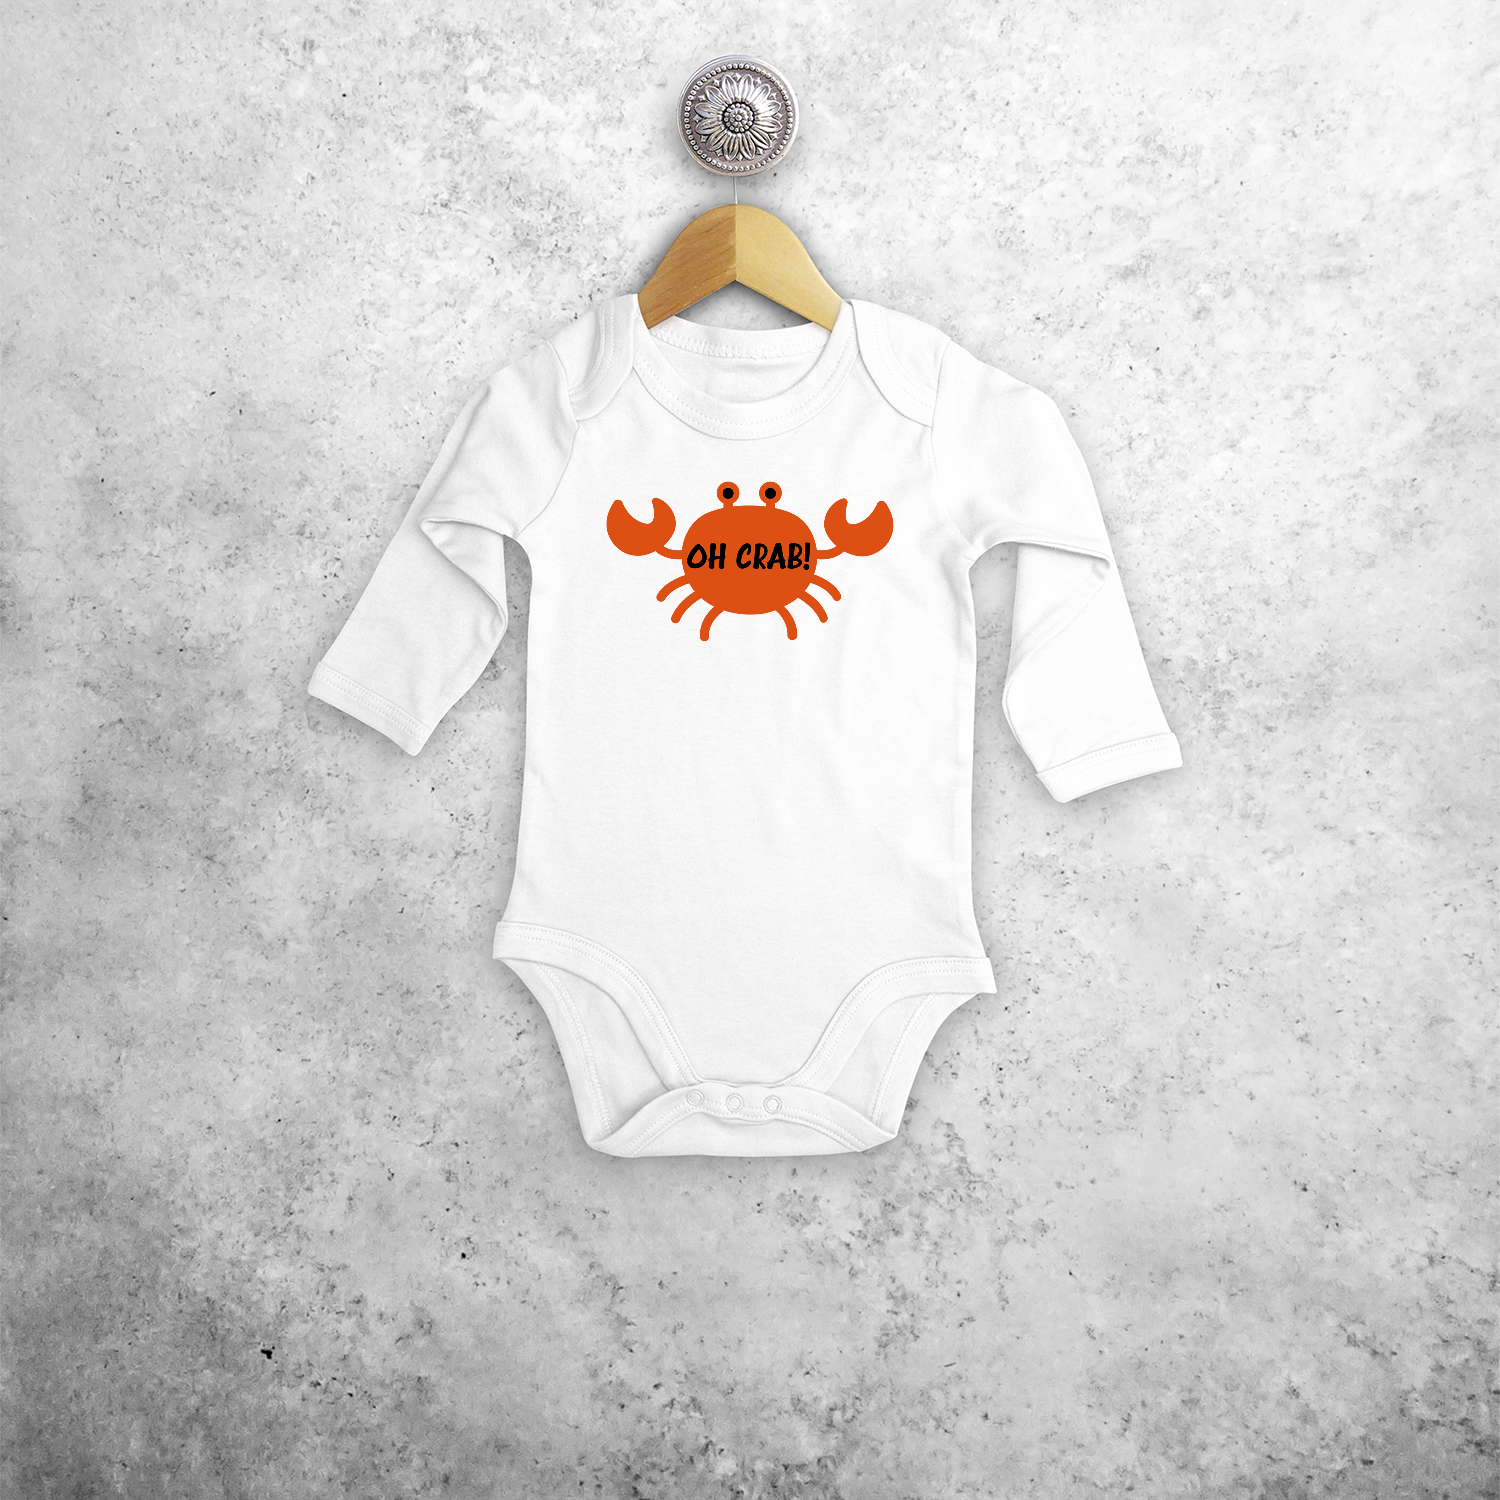 Oh crab!' baby kruippakje met lange mouwen